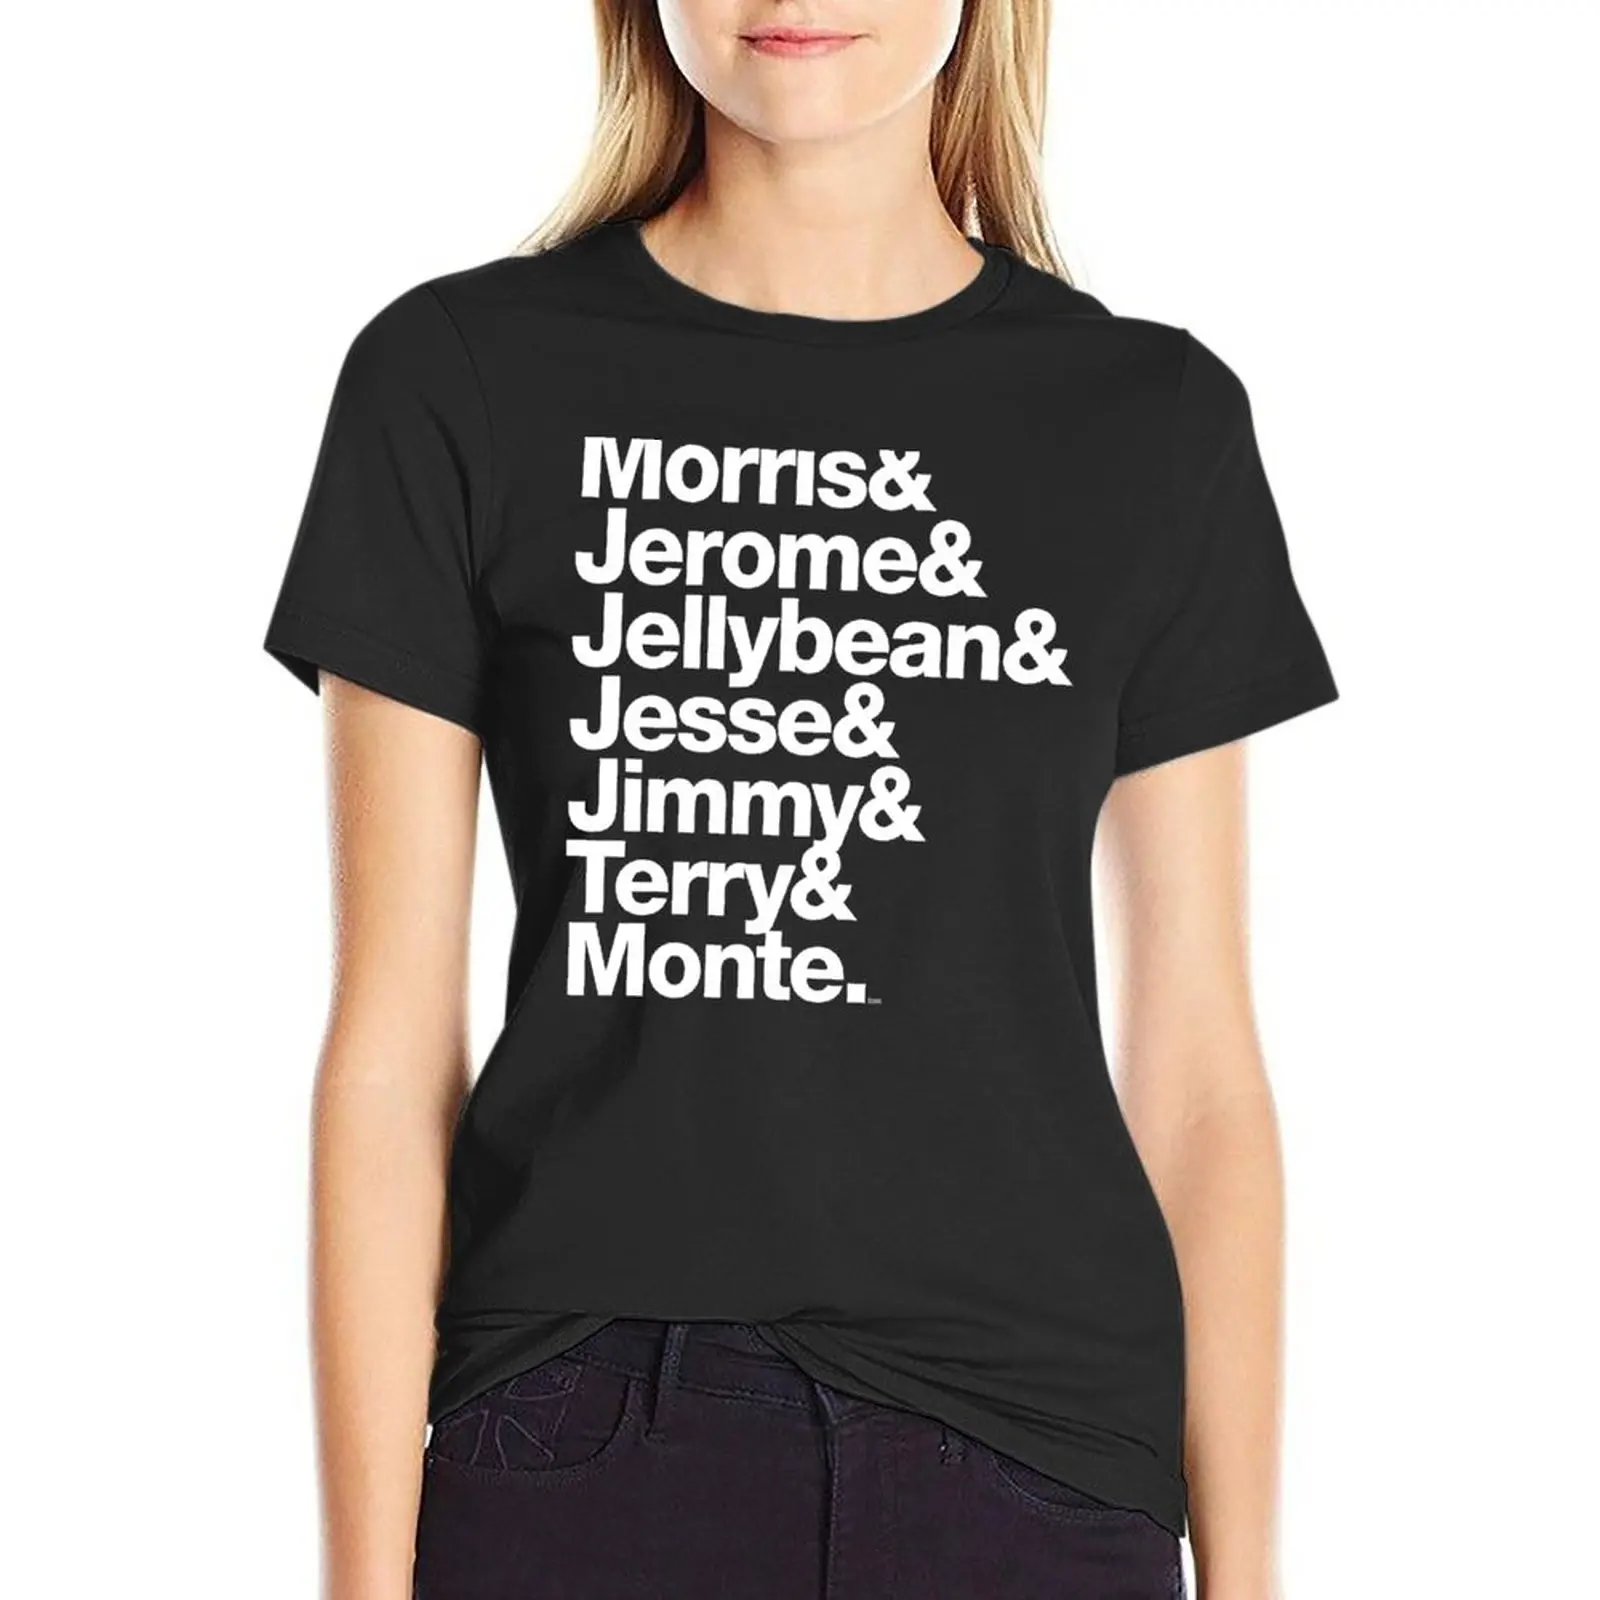 Оригинальная футболка 7ven Morris Day Jimmy Jam Merch, футболка оверсайз, графические футболки, футболки с графическими надписями, платье-футболка для женщин